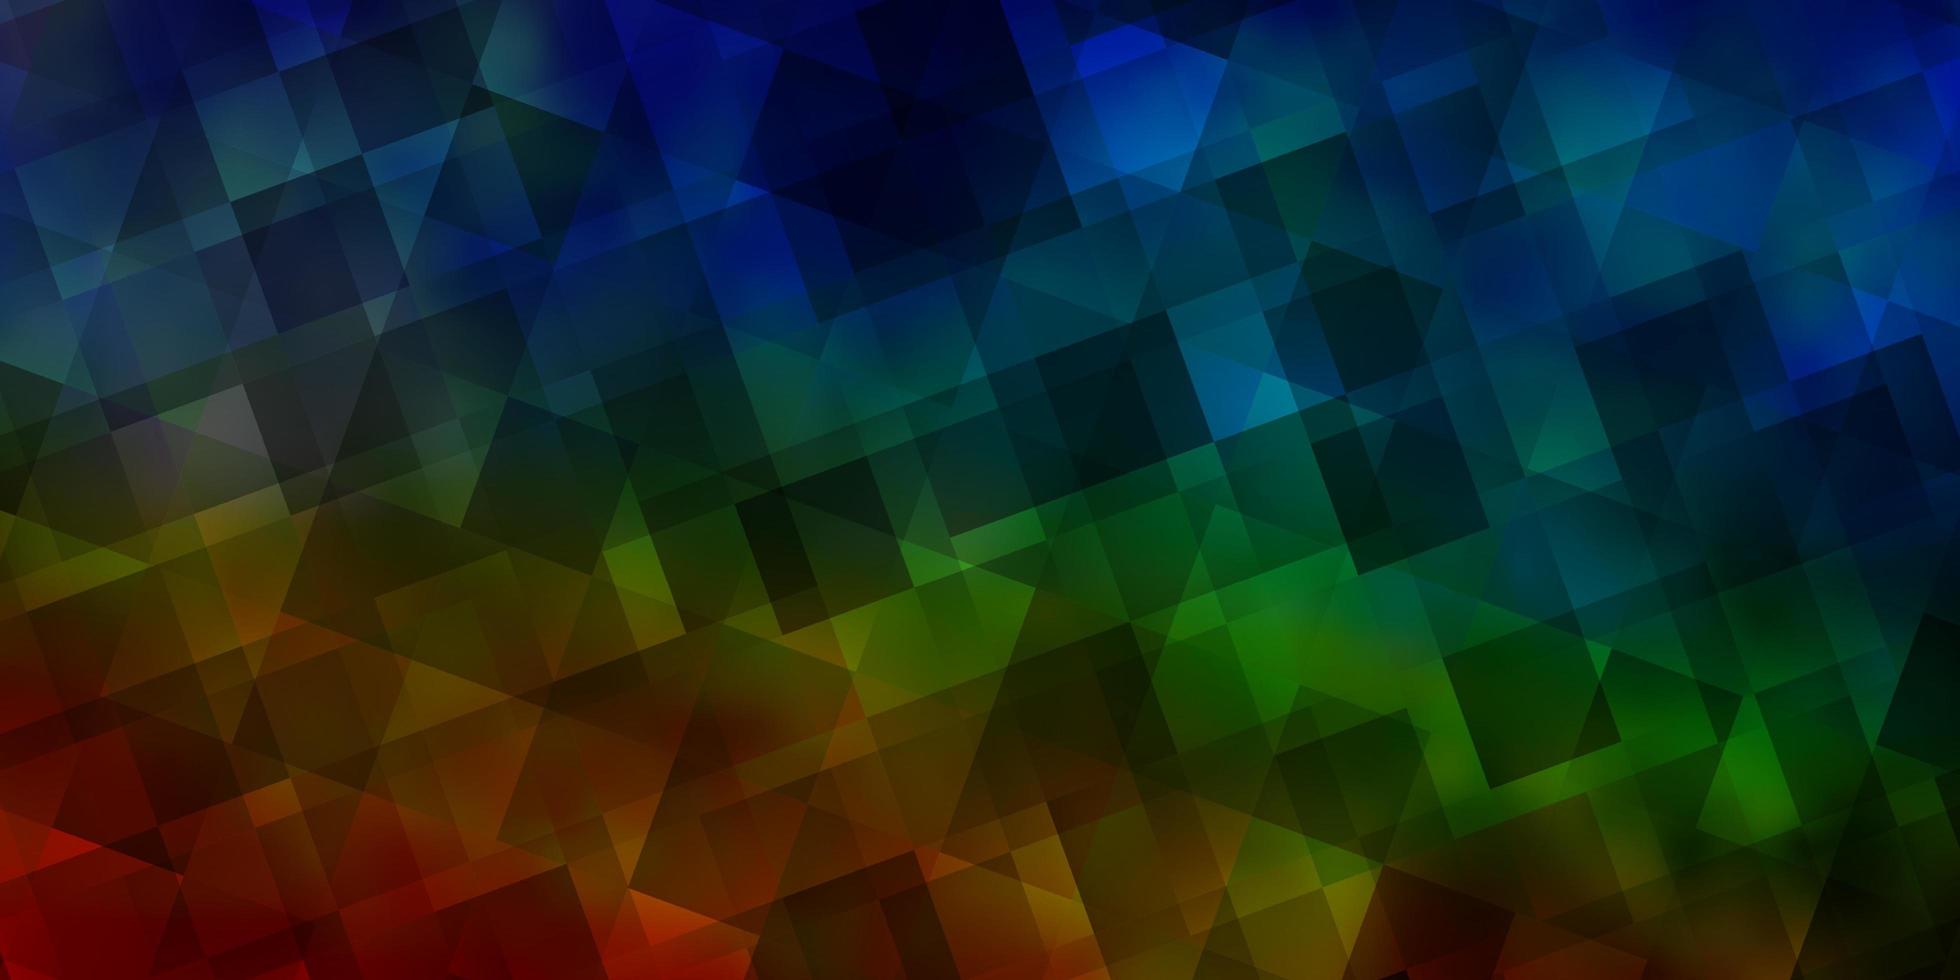 sfondo vettoriale multicolore chiaro con stile poligonale.